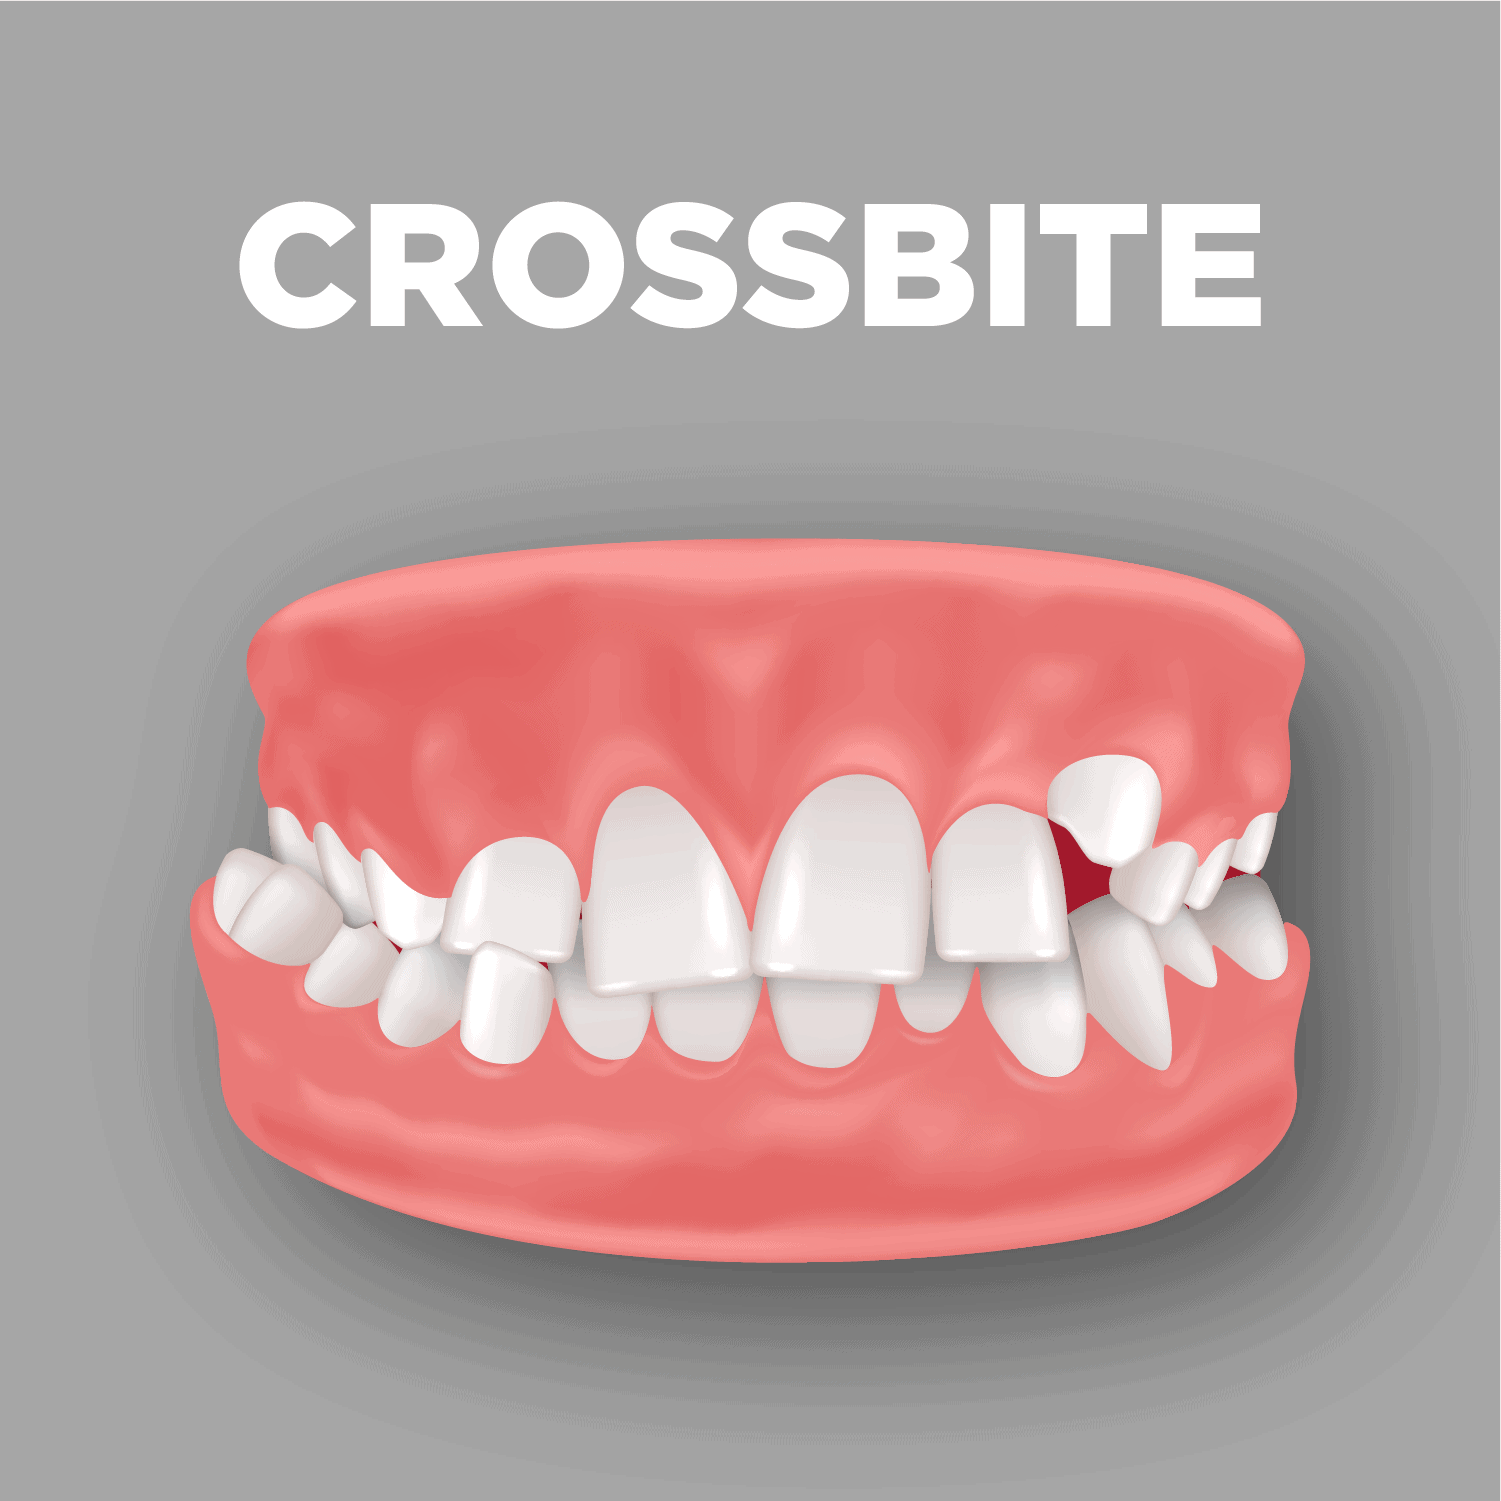 Crossbite